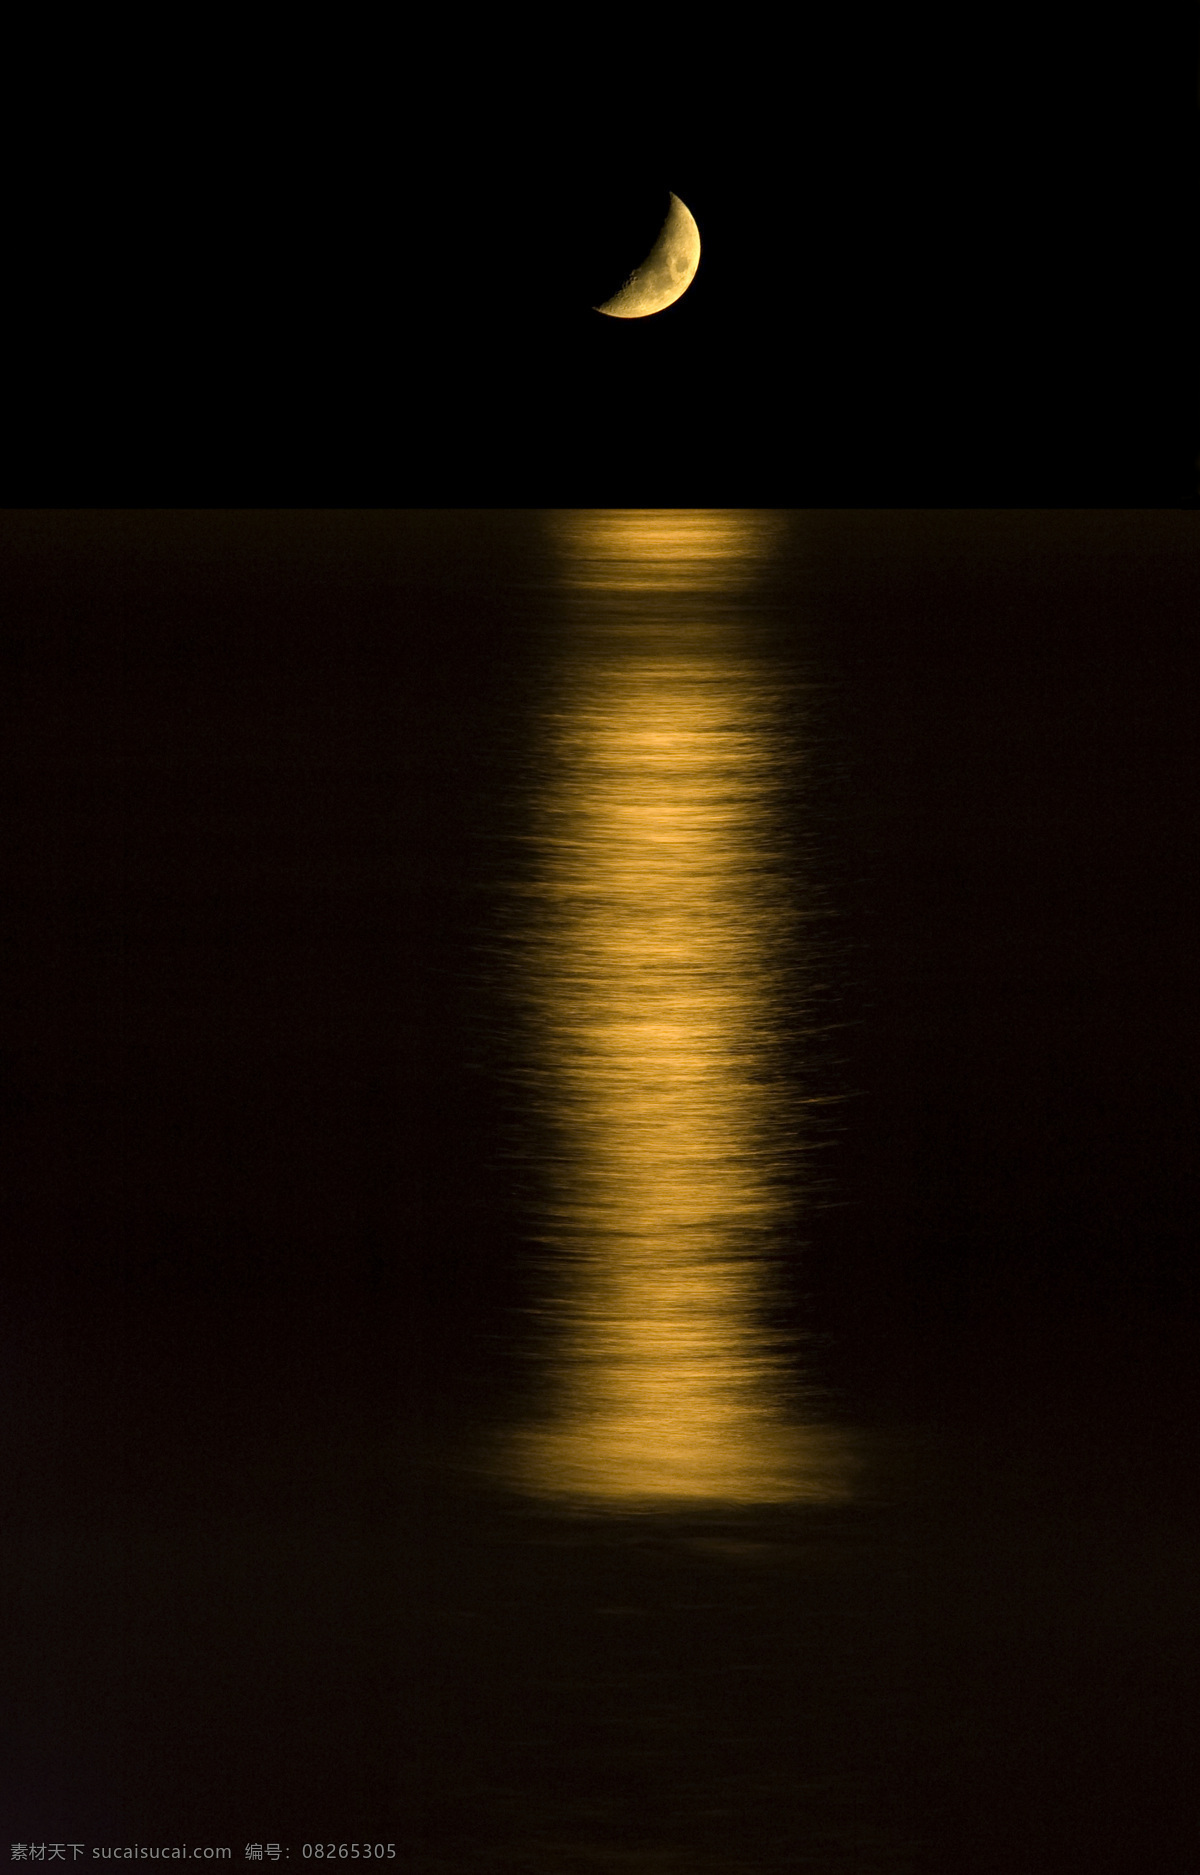 月夜的大海 大海 倒影 星空 月亮 星星 月夜 夜景 夜晚 底纹背景 创意图片 自然风景 自然景观 黑色